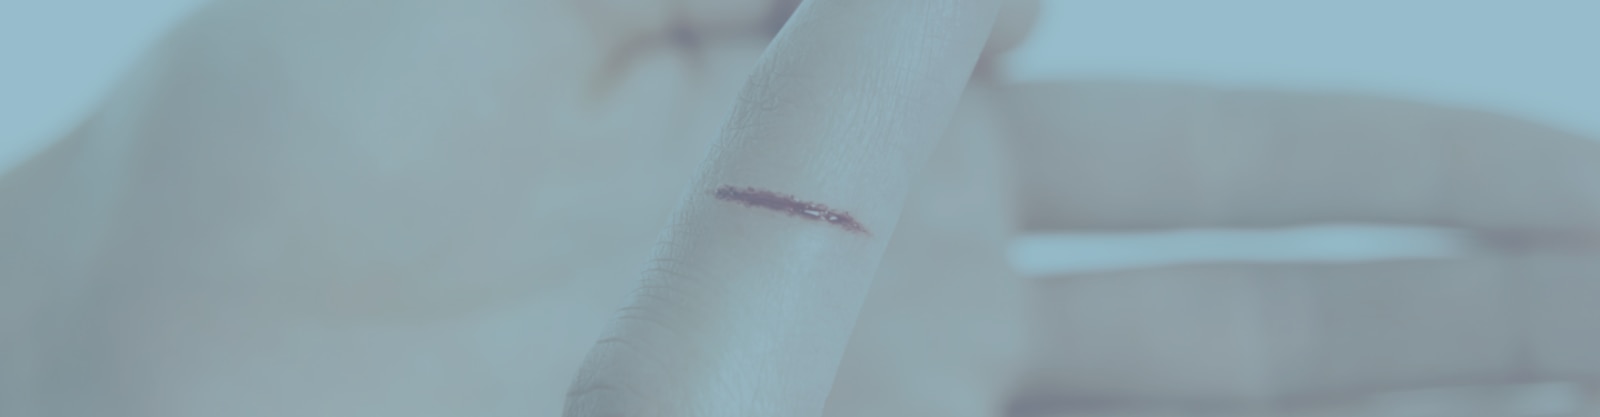 Imagen de corte en un dedo